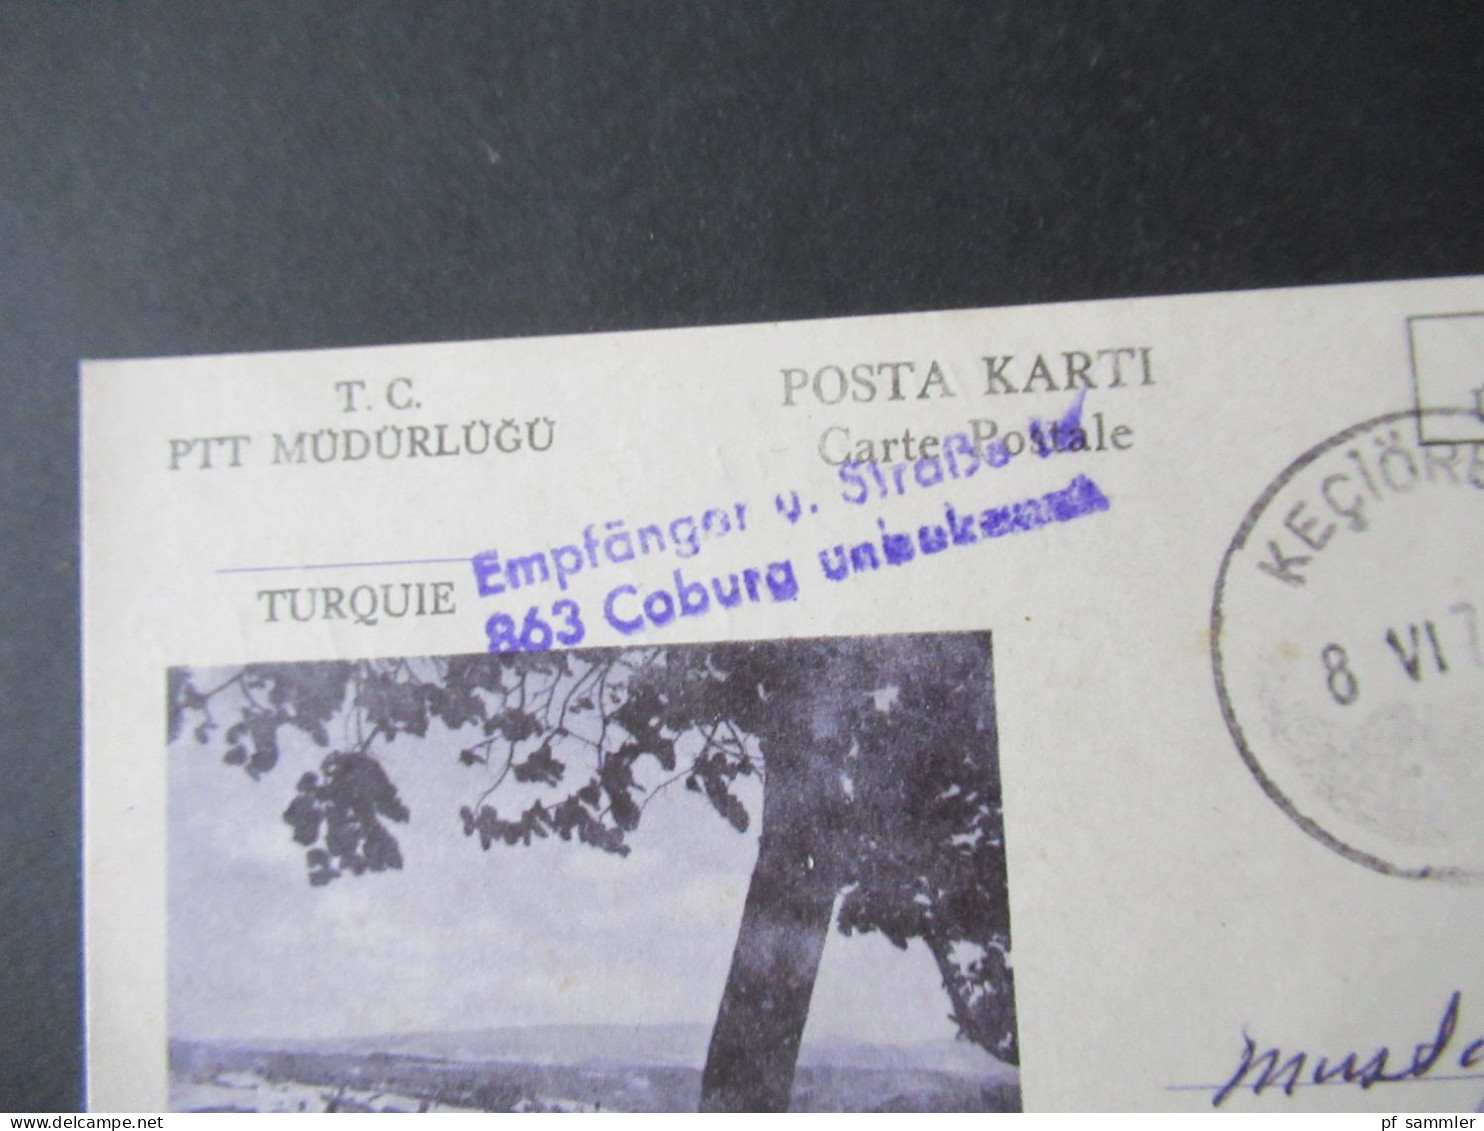 Türkei 1976 GA / P.P. Ücreti Ödenmistir Stempel Keciören Und Violetter L2 Empfänger U. Straße In 863 Coburg Unbekannt - Storia Postale